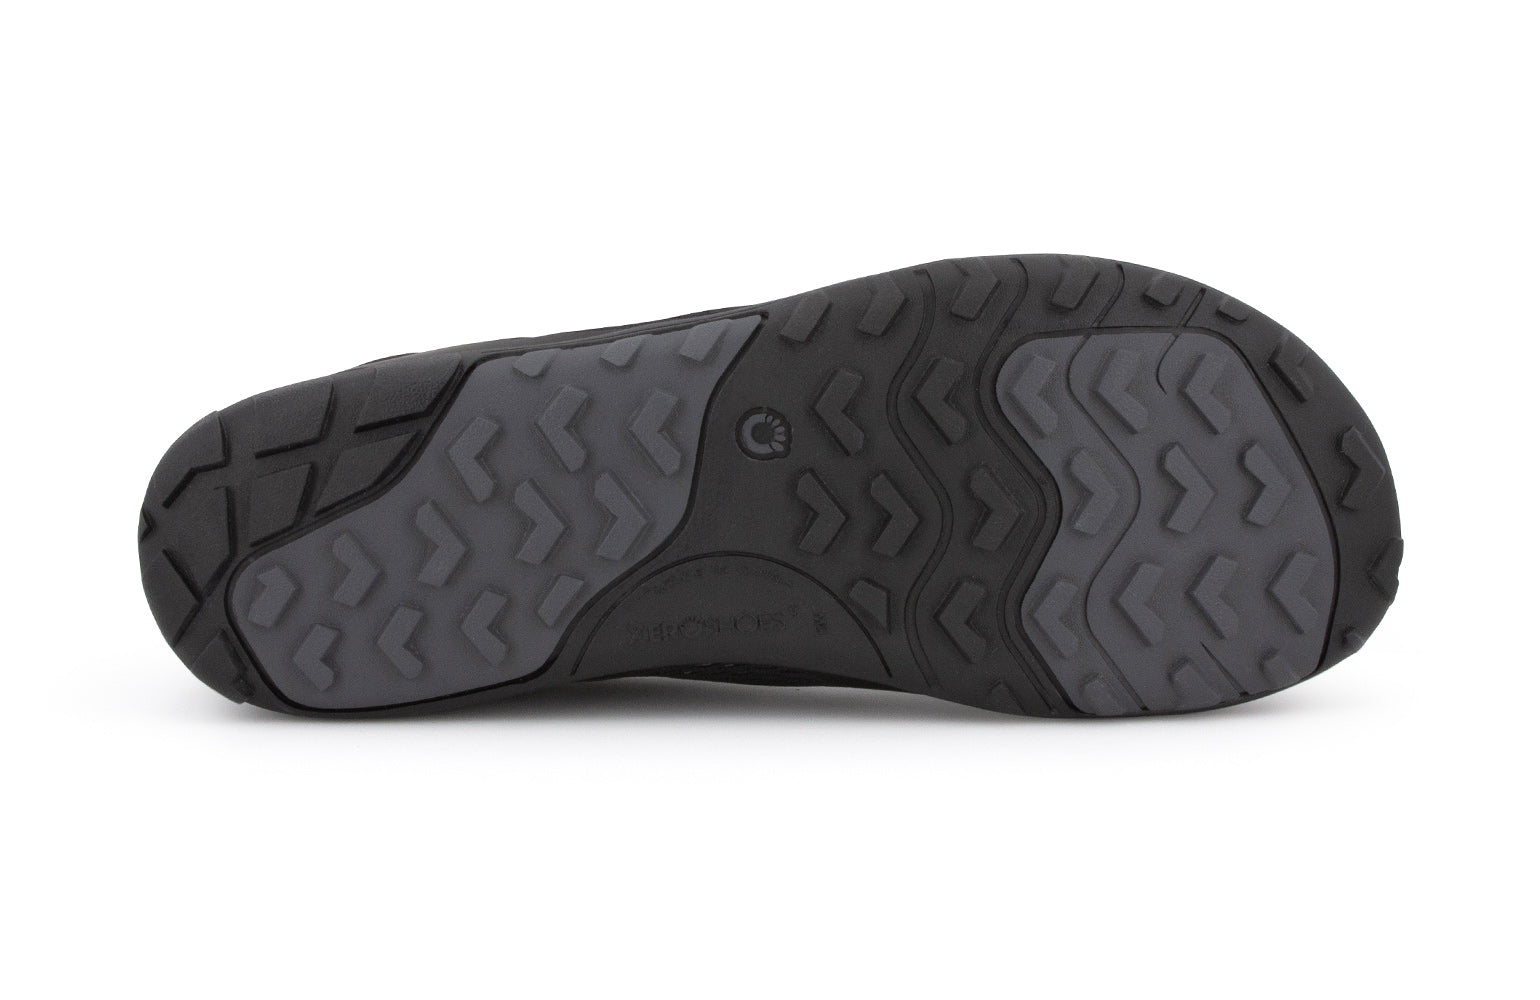 Xero Shoes Aqua X Sport barfods vand træningssko til mænd i farven black, saal